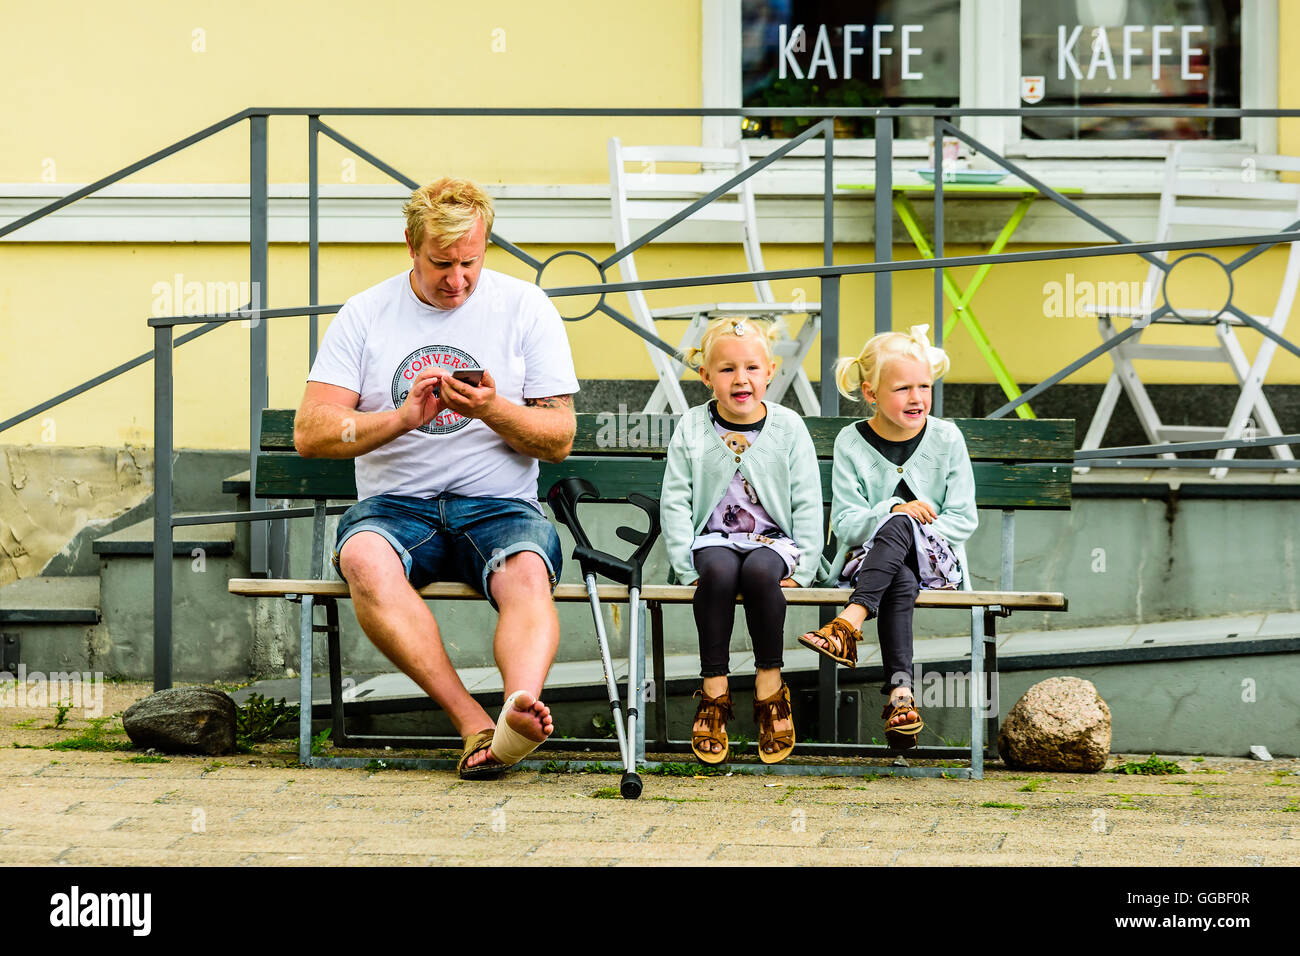 Ystad, Schweden - 1. August 2016: Echte Menschen im Alltag. Erwachsener Mann mit Krücken und einem verletzten Fuß sitzen neben zwei schöne Mädchen Stockfoto